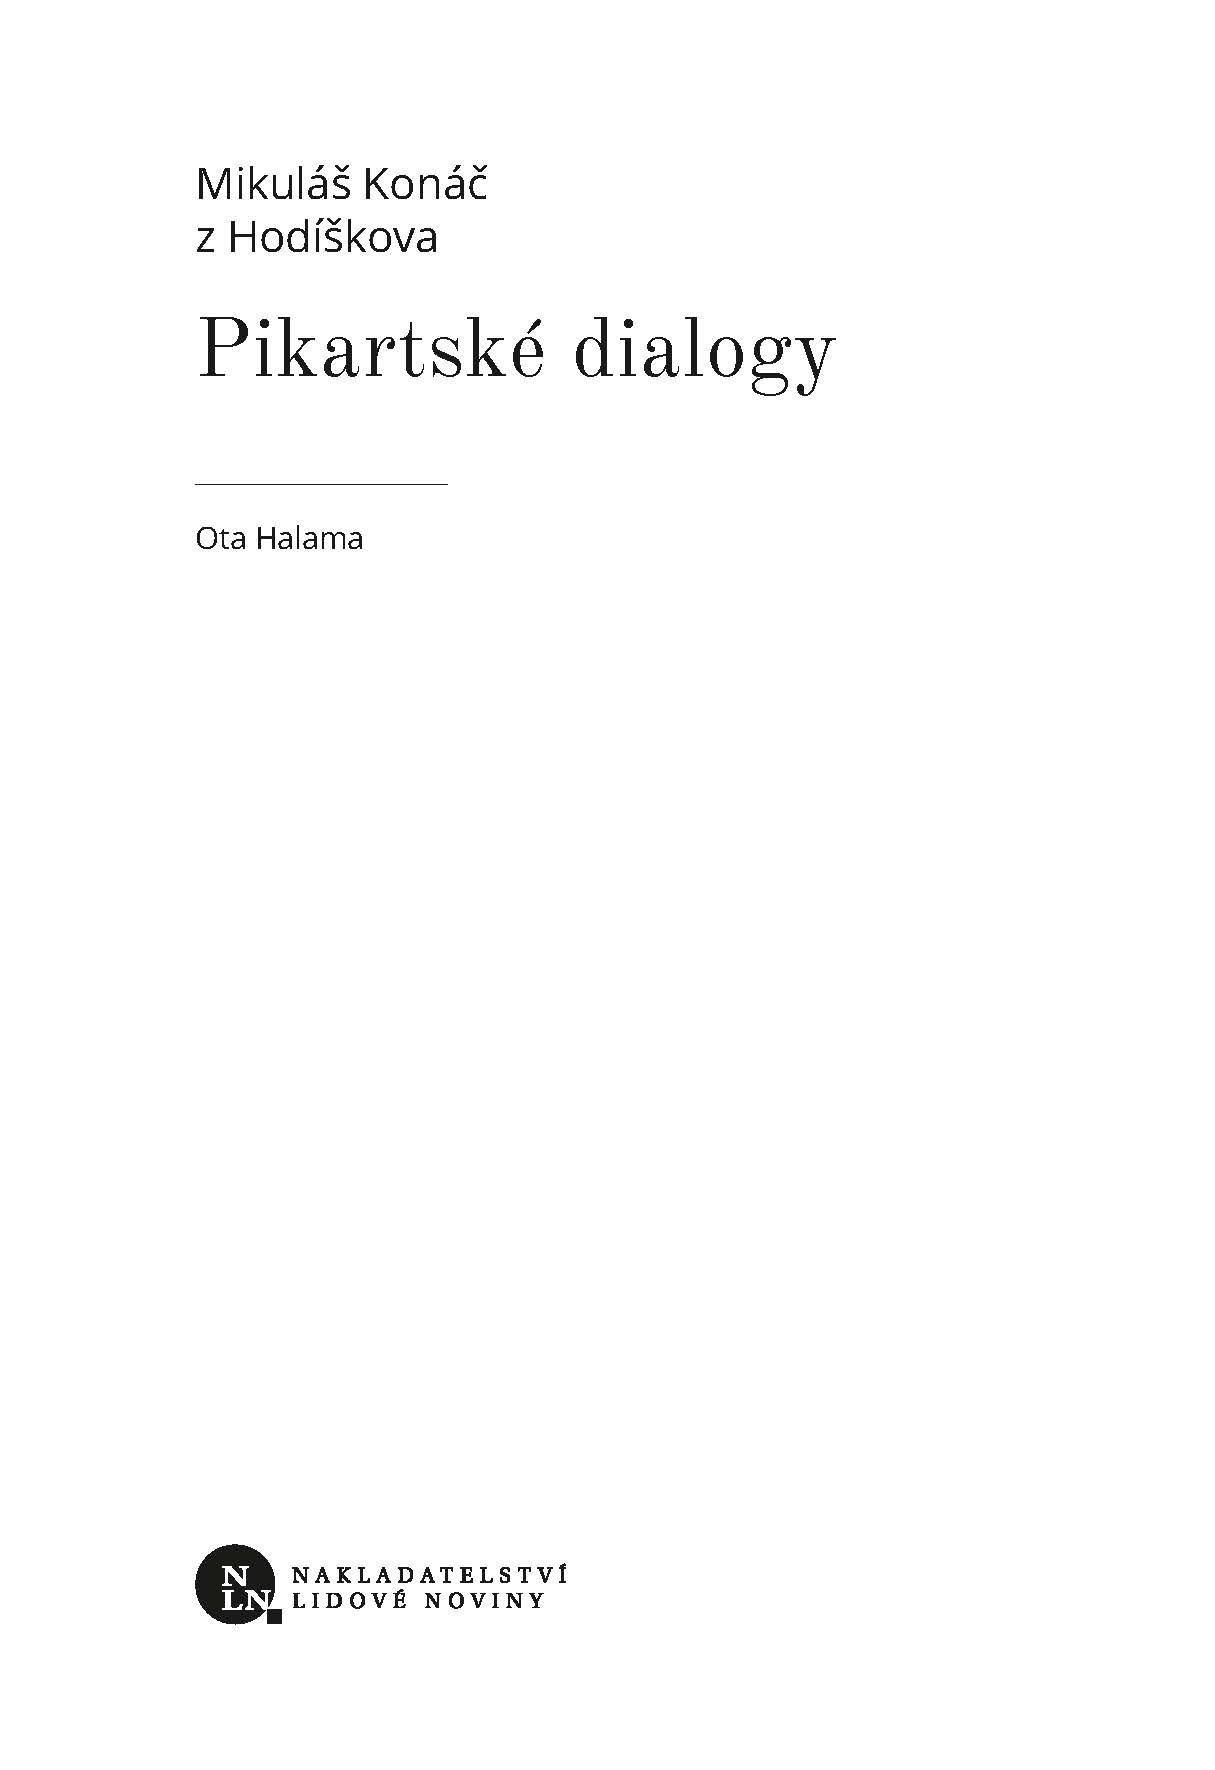 Pikartské dialogy ukázka-1